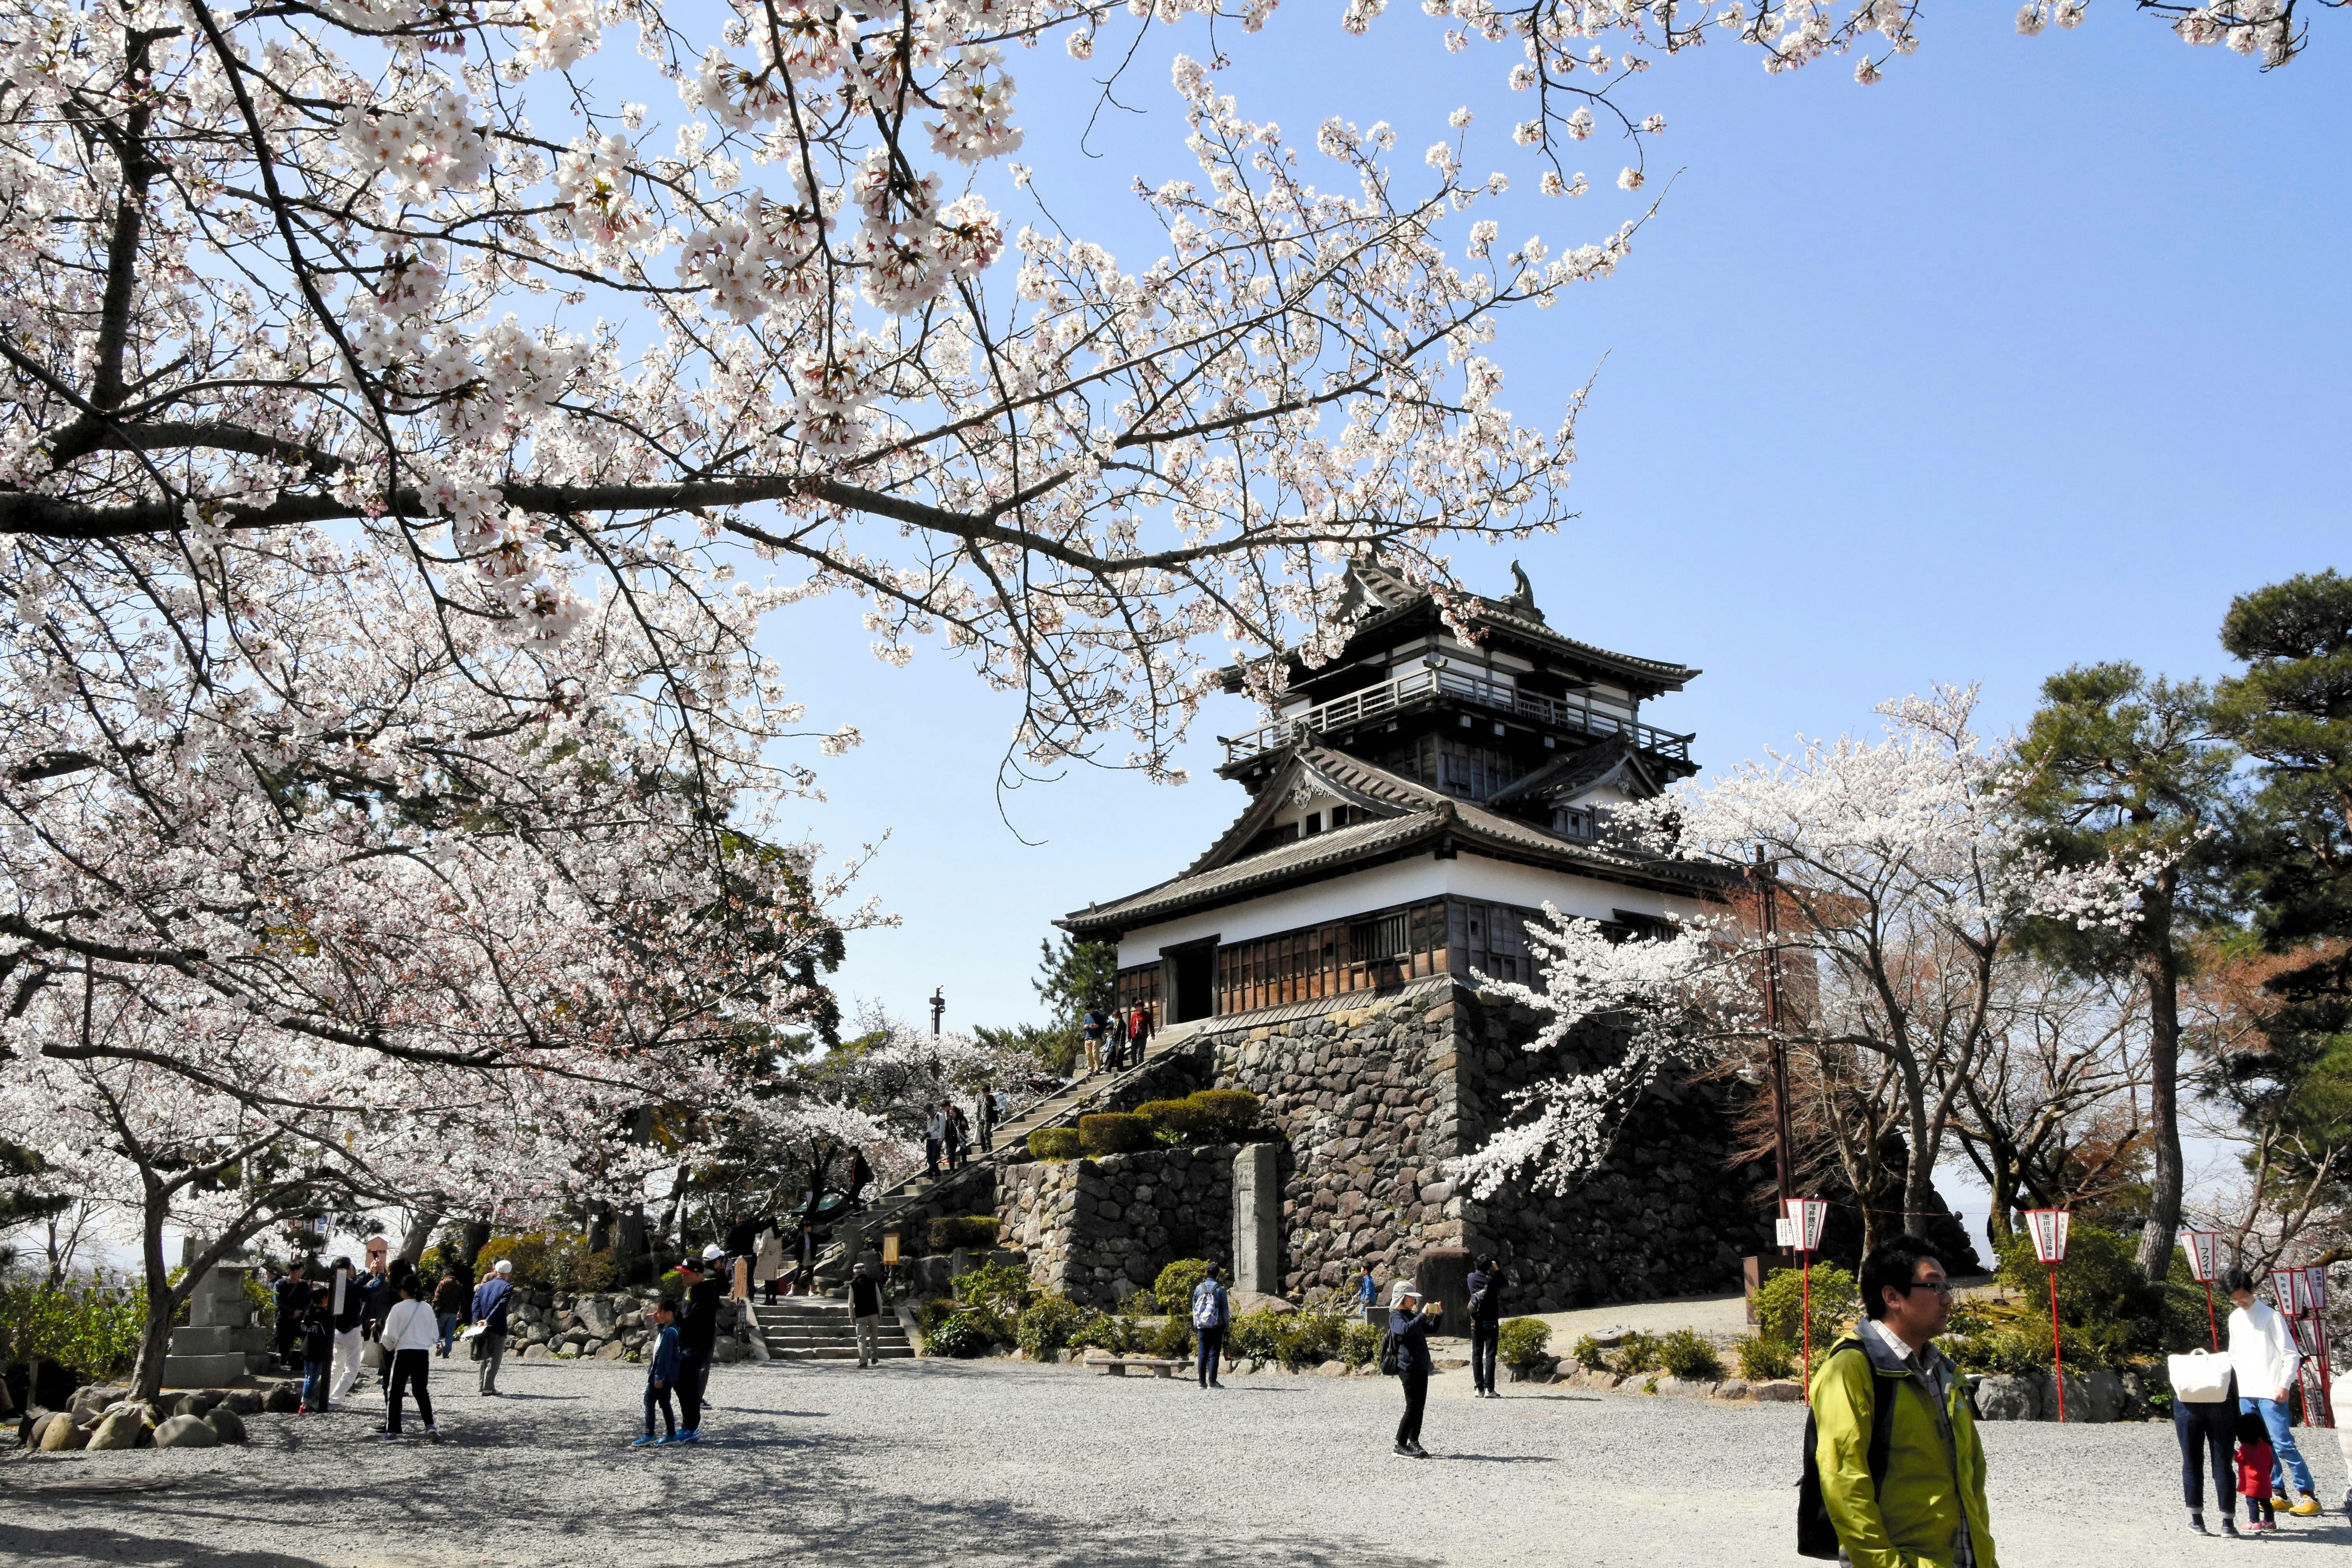 Maruoka Castle: ett gammalt trä- och stenslott byggt i traditionell japansk stil, med sluttande tak.  I förgrunden syns träd med körsbärsblommor, liksom människor som går mot slottet.